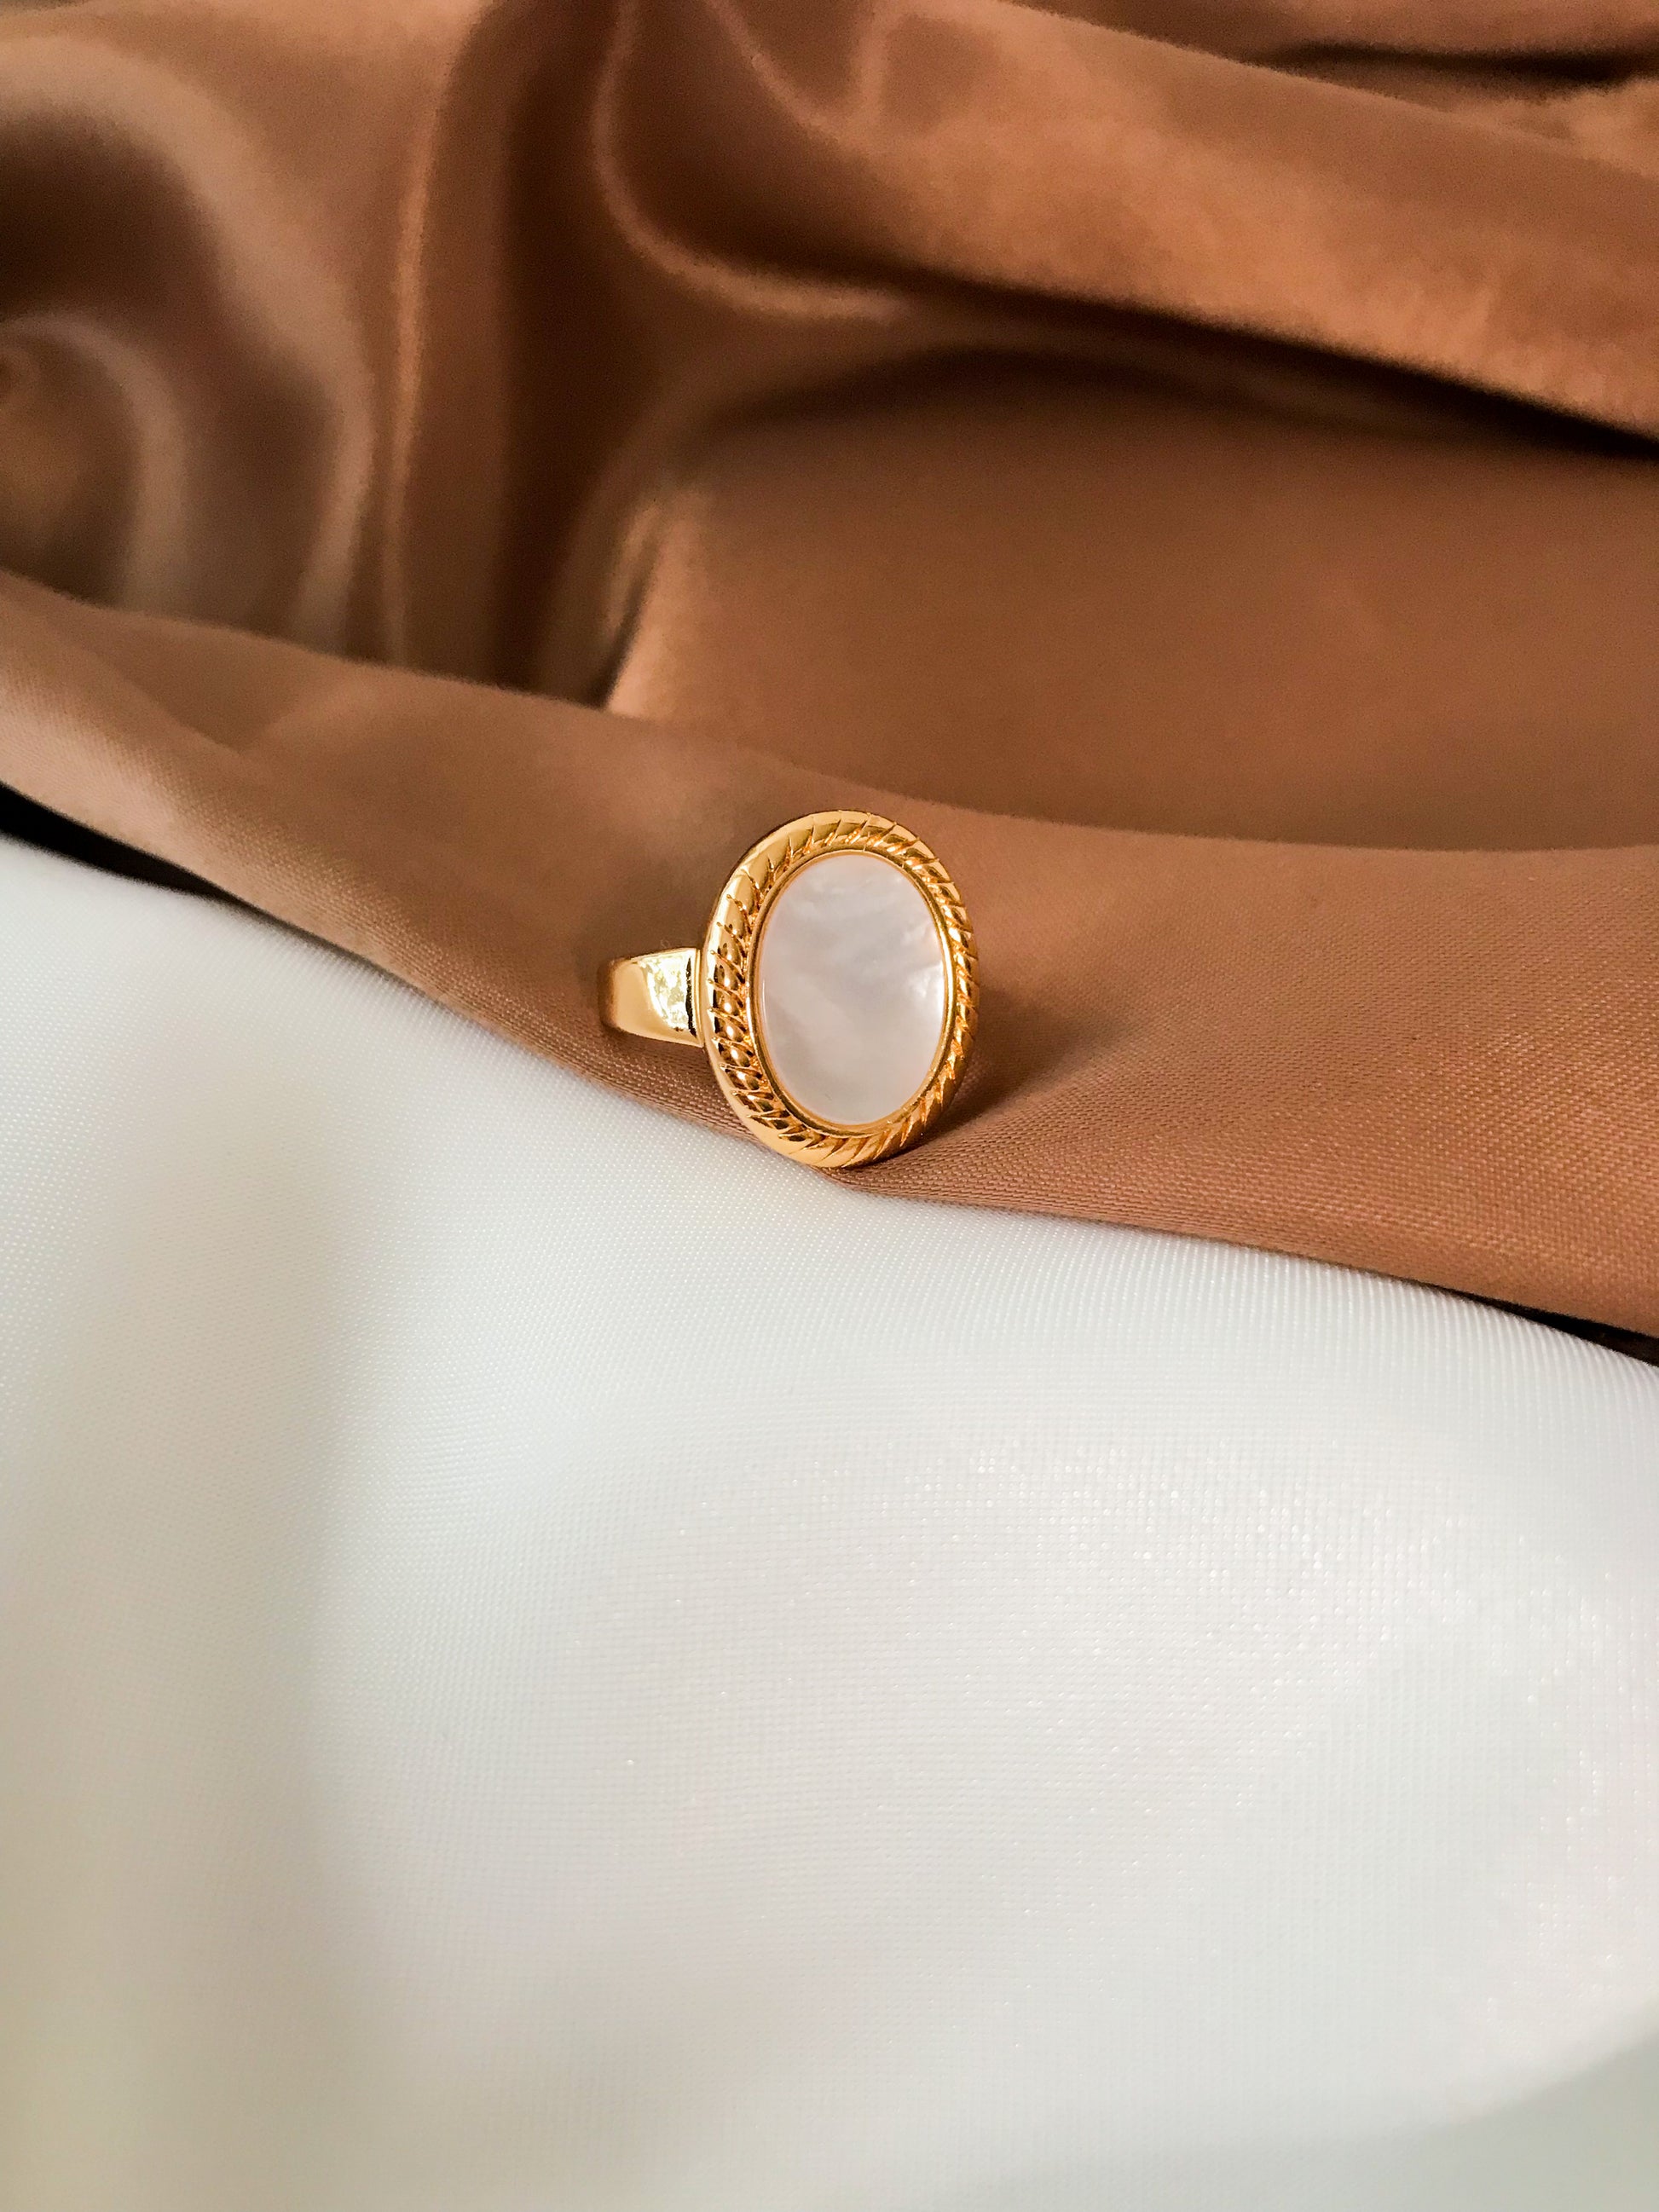 anillo dorado elegante con piedra blanca nacar ajustable de acero inoxidable